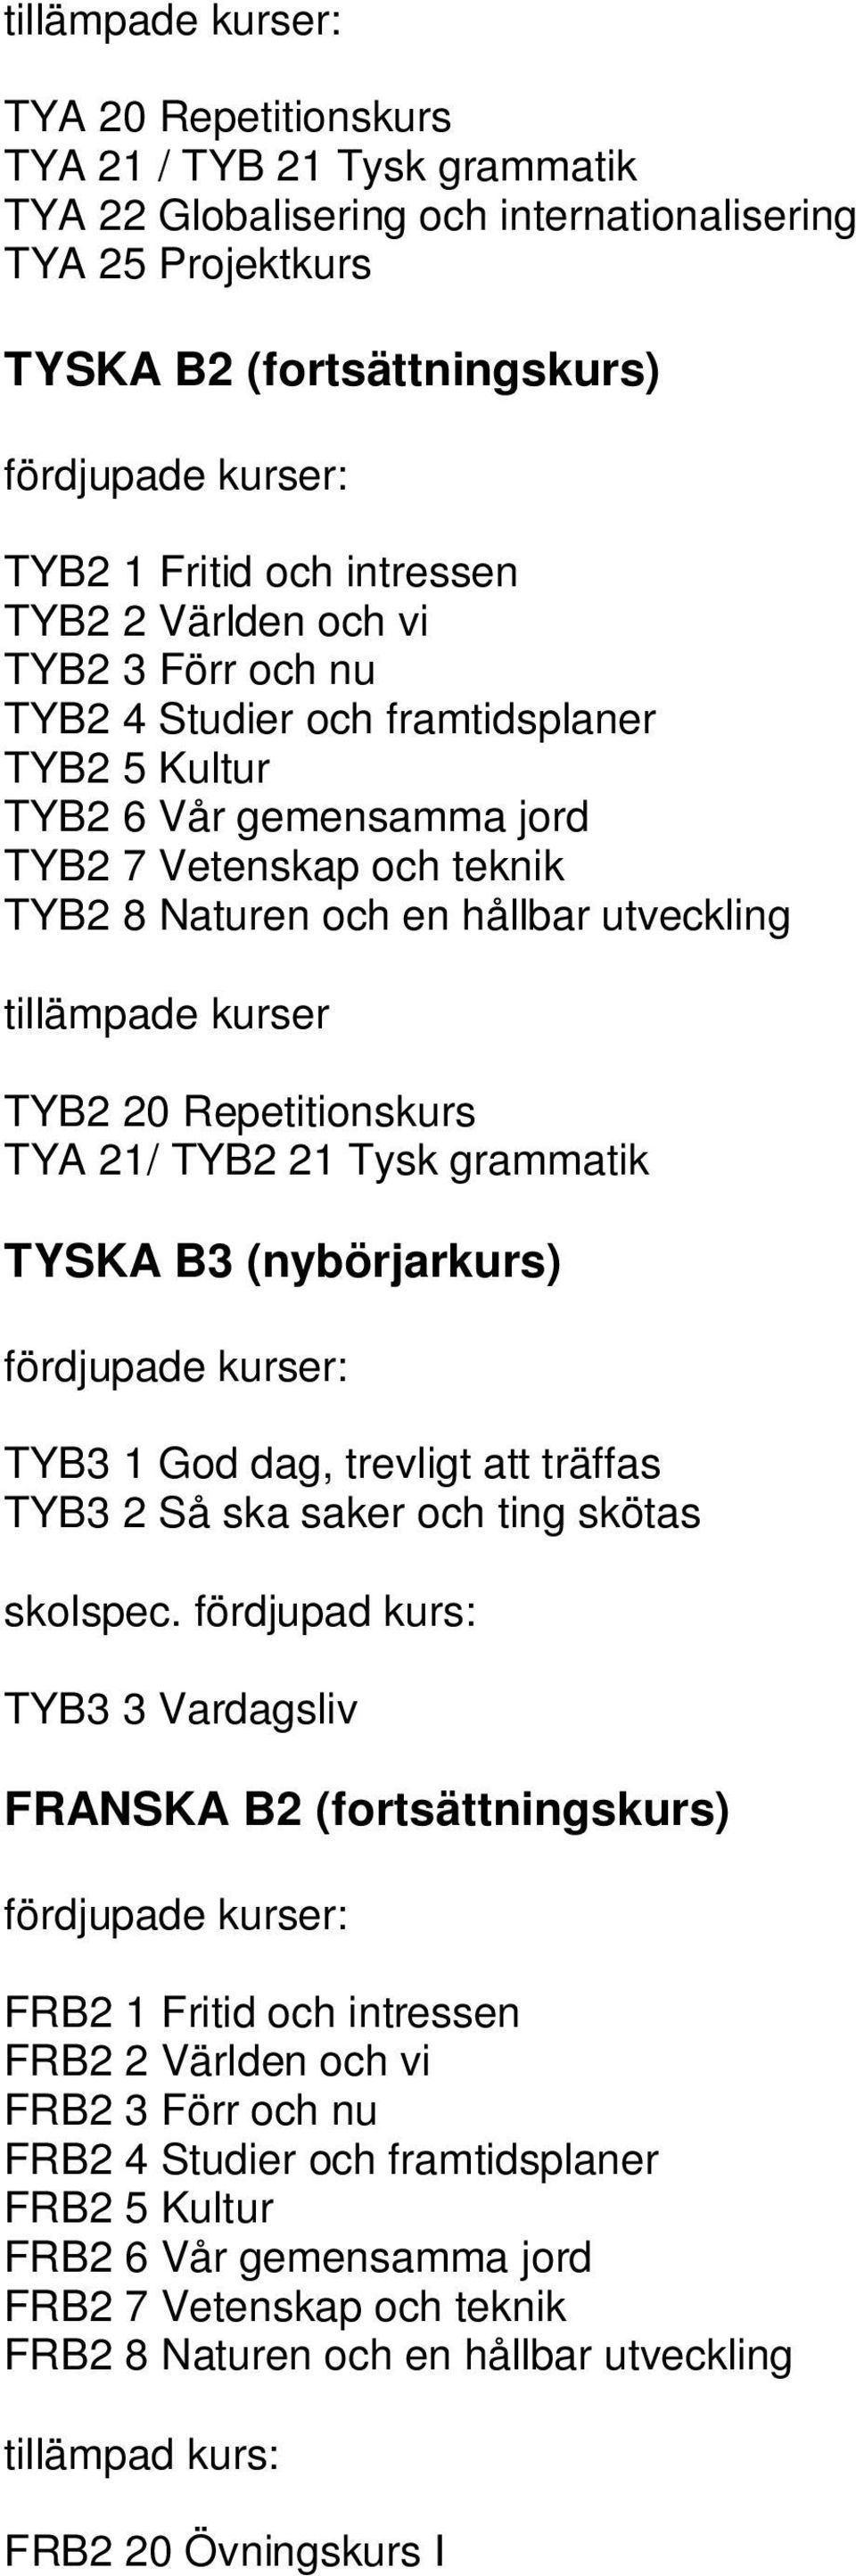 Repetitionskurs TYA 21/ TYB2 21 Tysk grammatik TYSKA B3 (nybörjarkurs) TYB3 1 God dag, trevligt att träffas TYB3 2 Så ska saker och ting skötas skolspec.